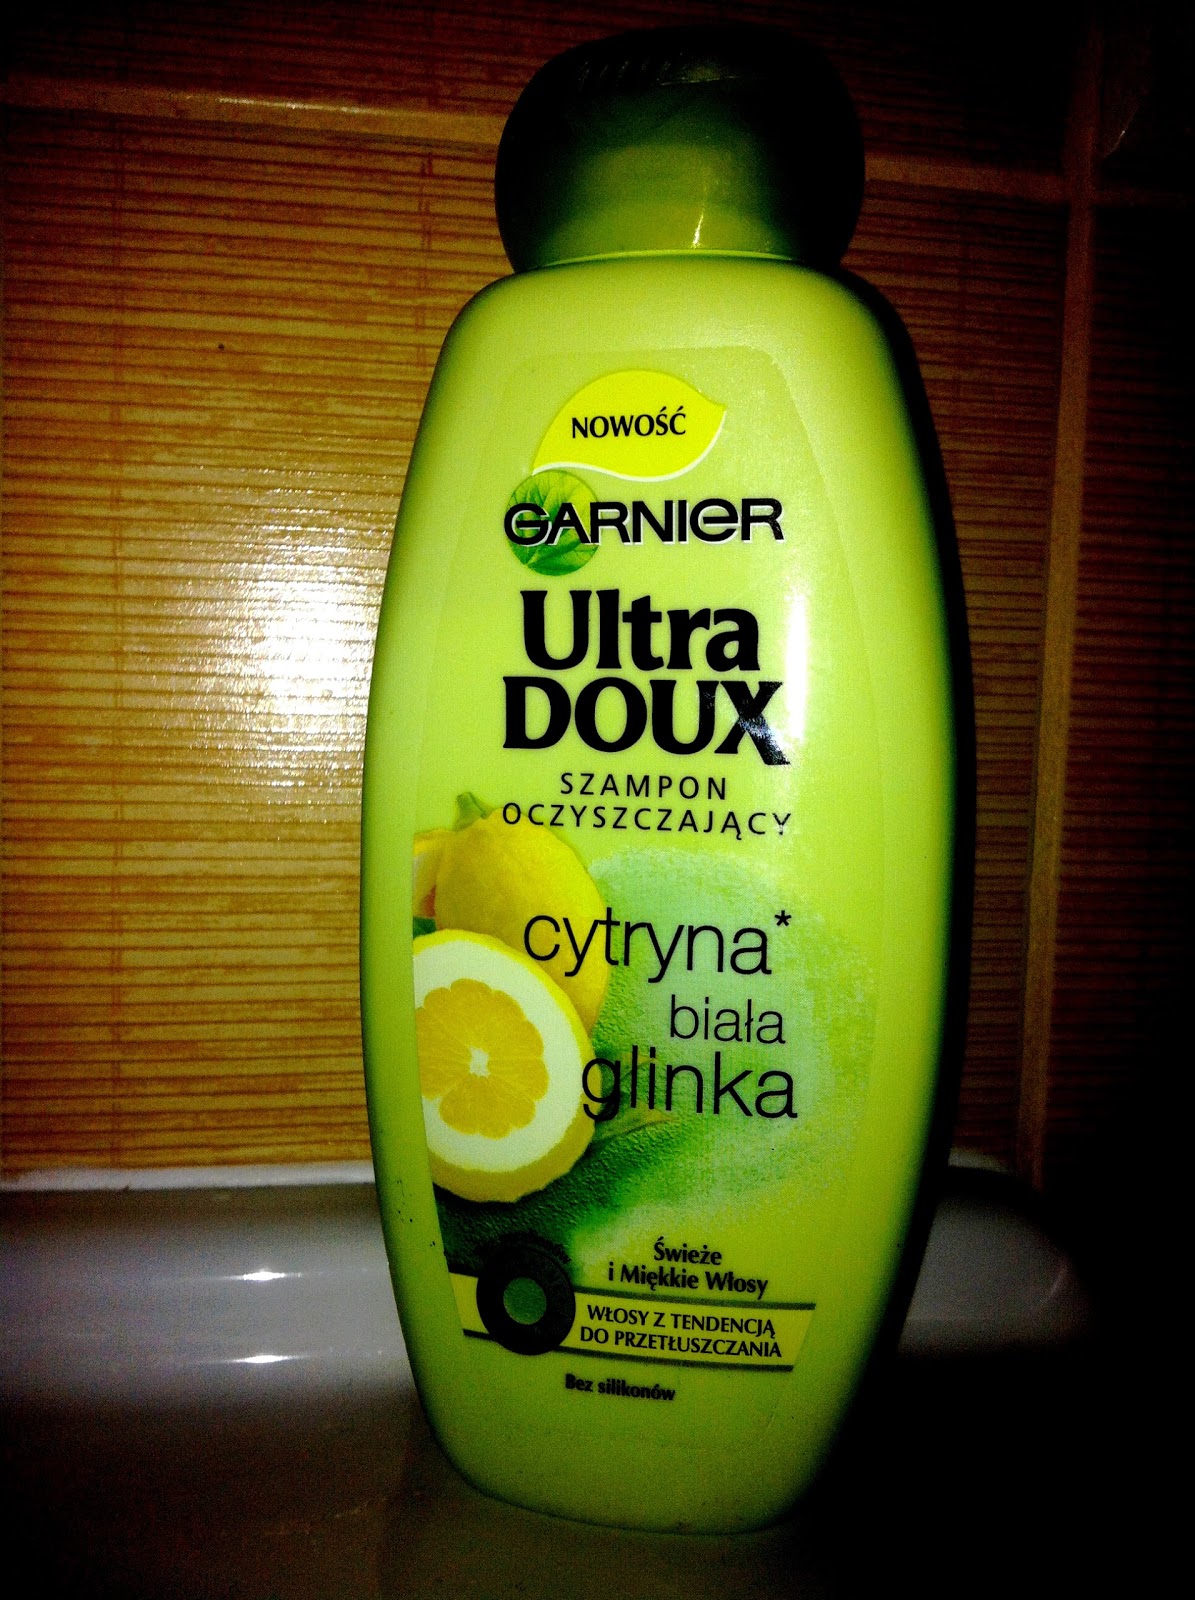 arnier ultra doux szampon oczyszczający biał